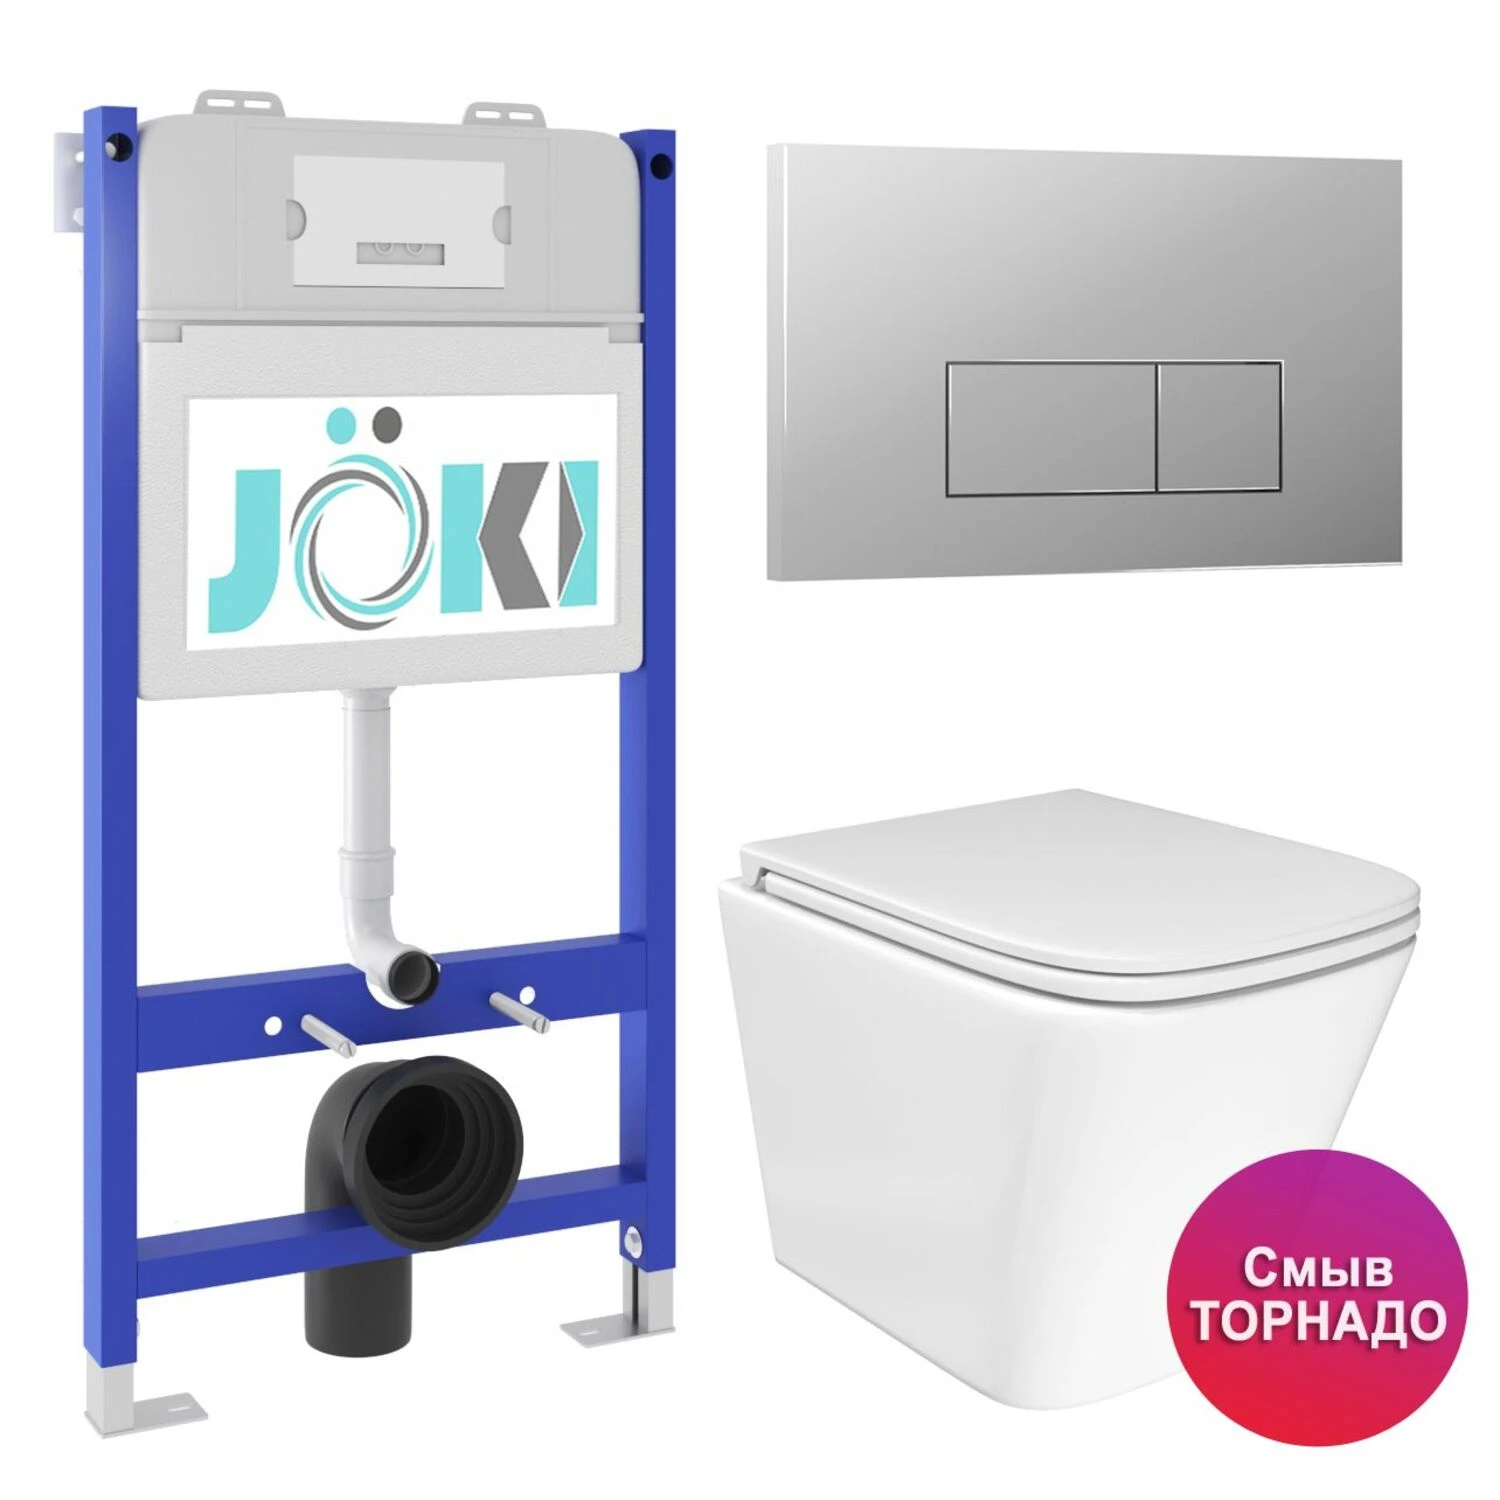 Комплект: JOKI Инсталляция JK03351+Кнопка JK202501CH хром+Verna T JK3031025 унитаз белый, смыв Торнадо